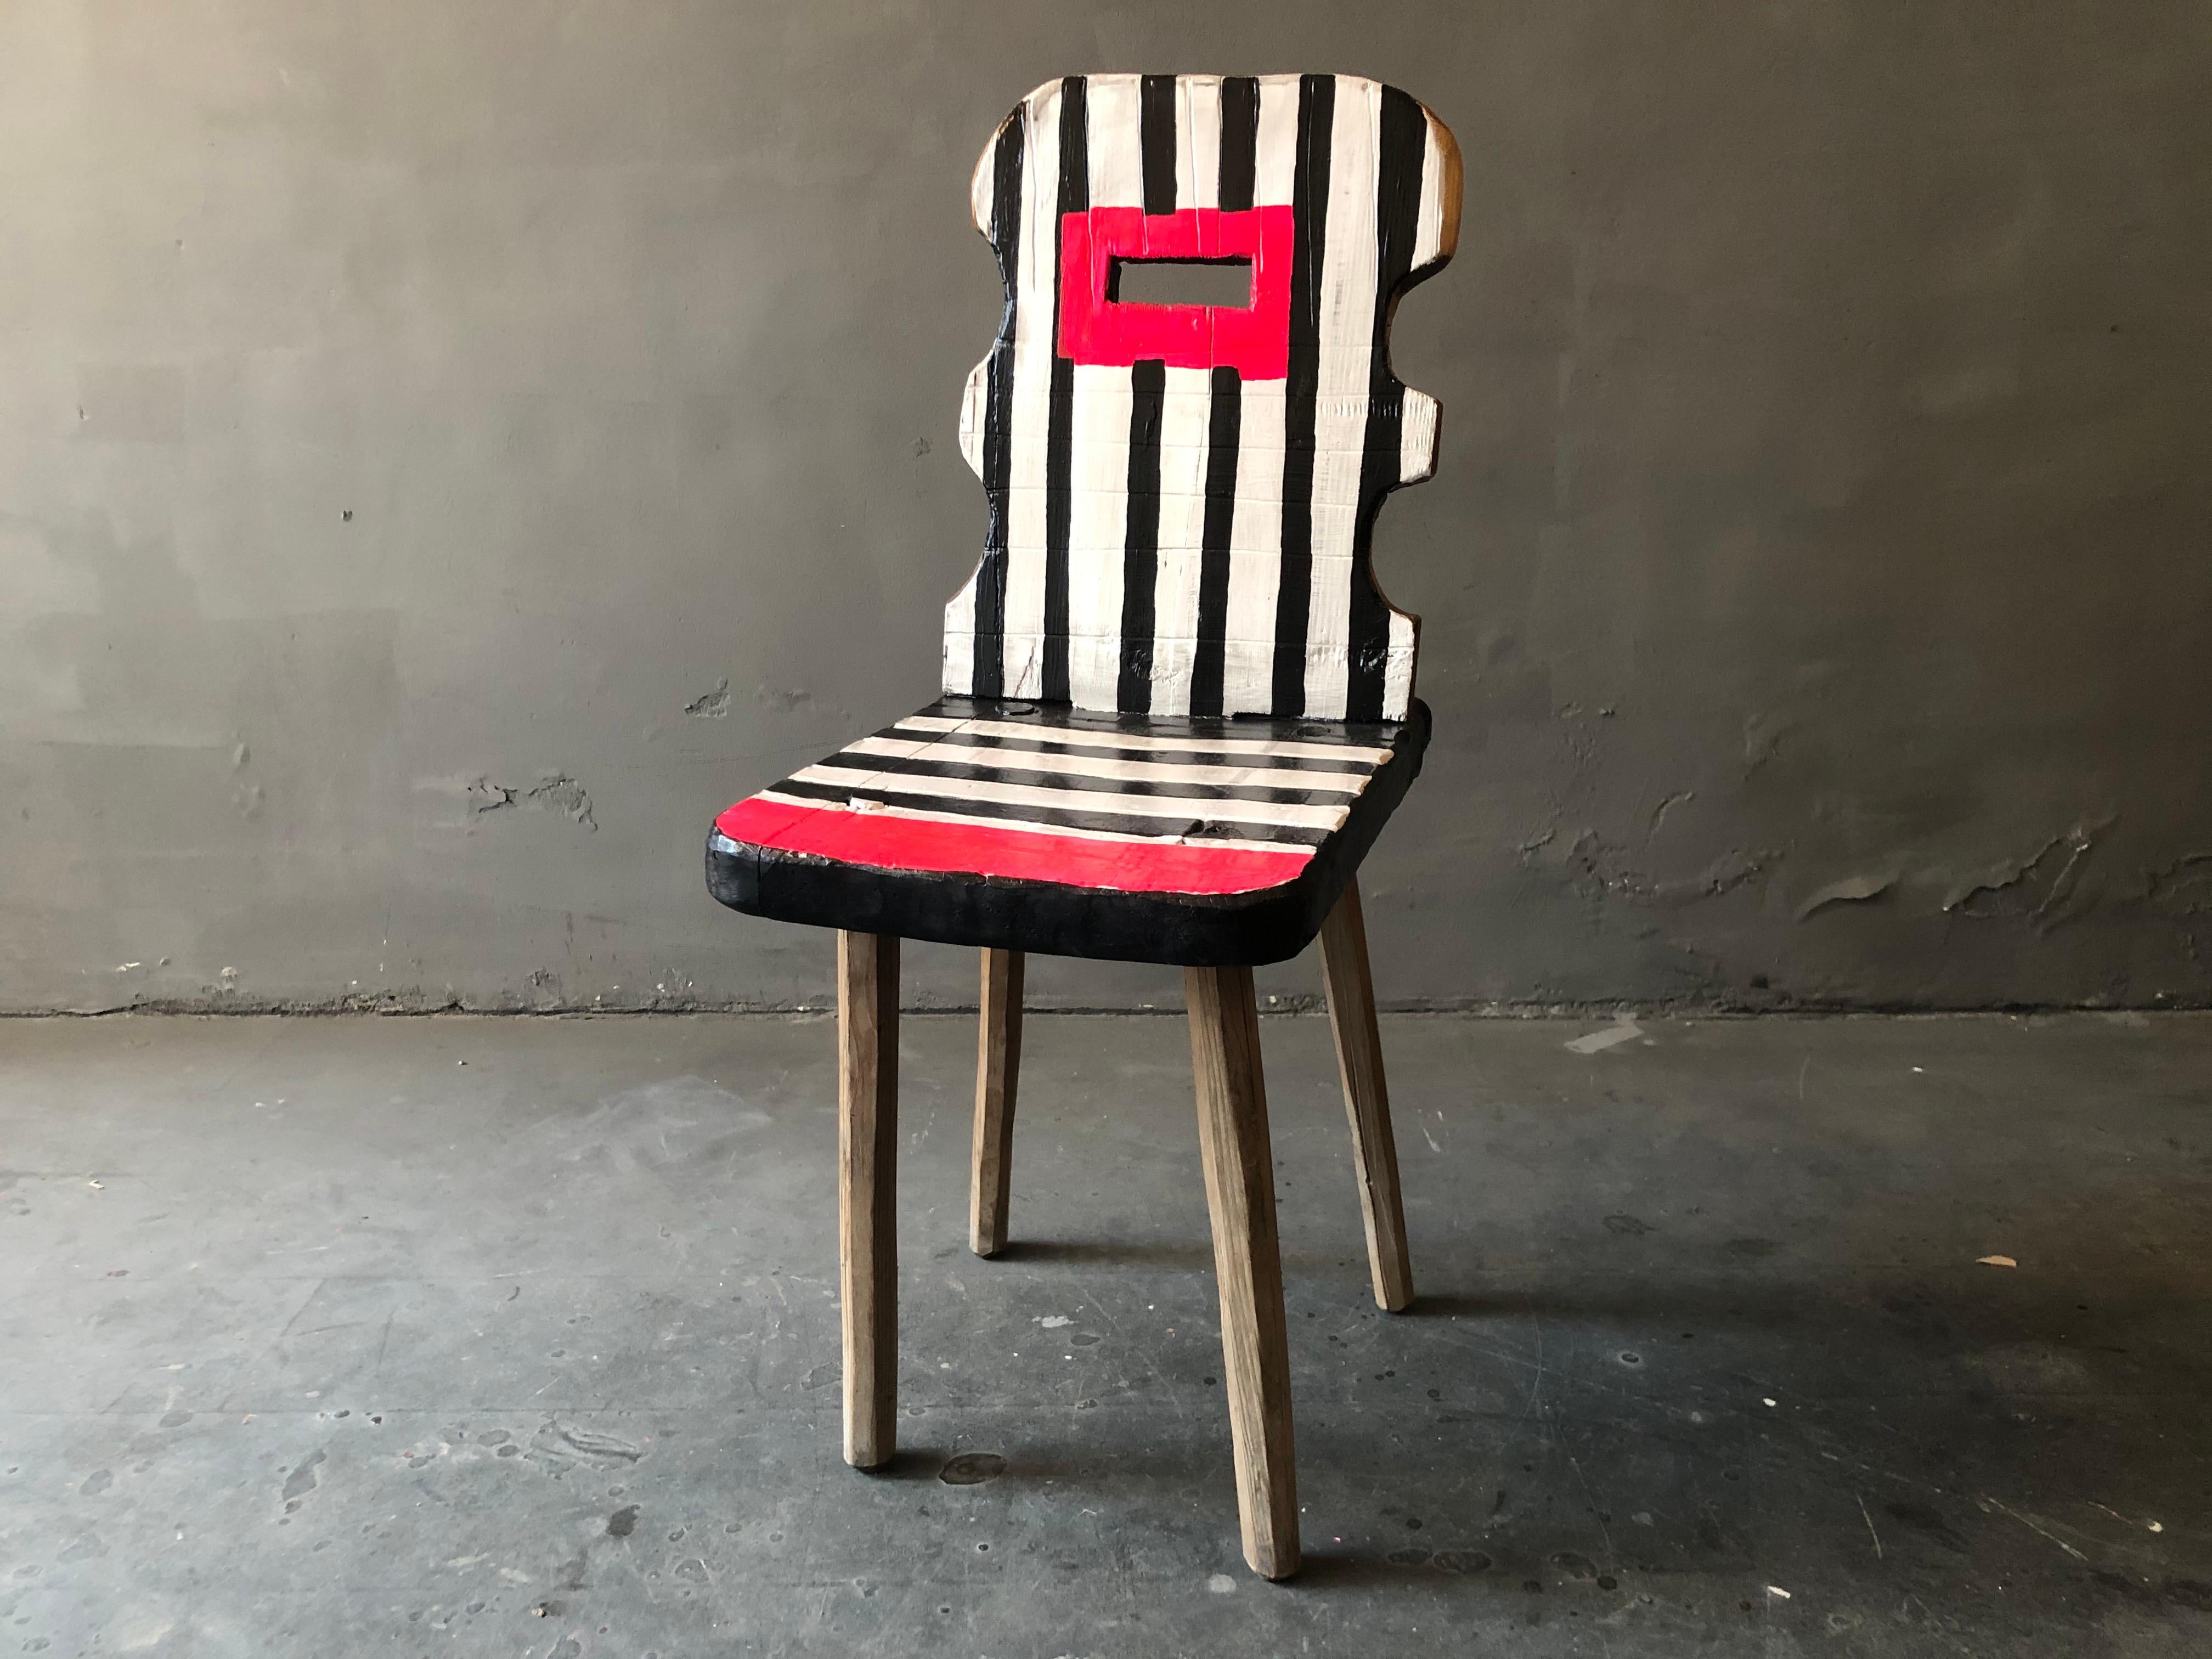 Dieser Bauernstuhl aus dem Schwarzwald ist lackiert, mehrfach lackiert und mit einem Griffloch versehen worden. Die auffälligen Farben sind ansteckend.
Durch meine Arbeit verwandle ich jeden Stuhl in ein einzigartiges und individuelles Objekt.